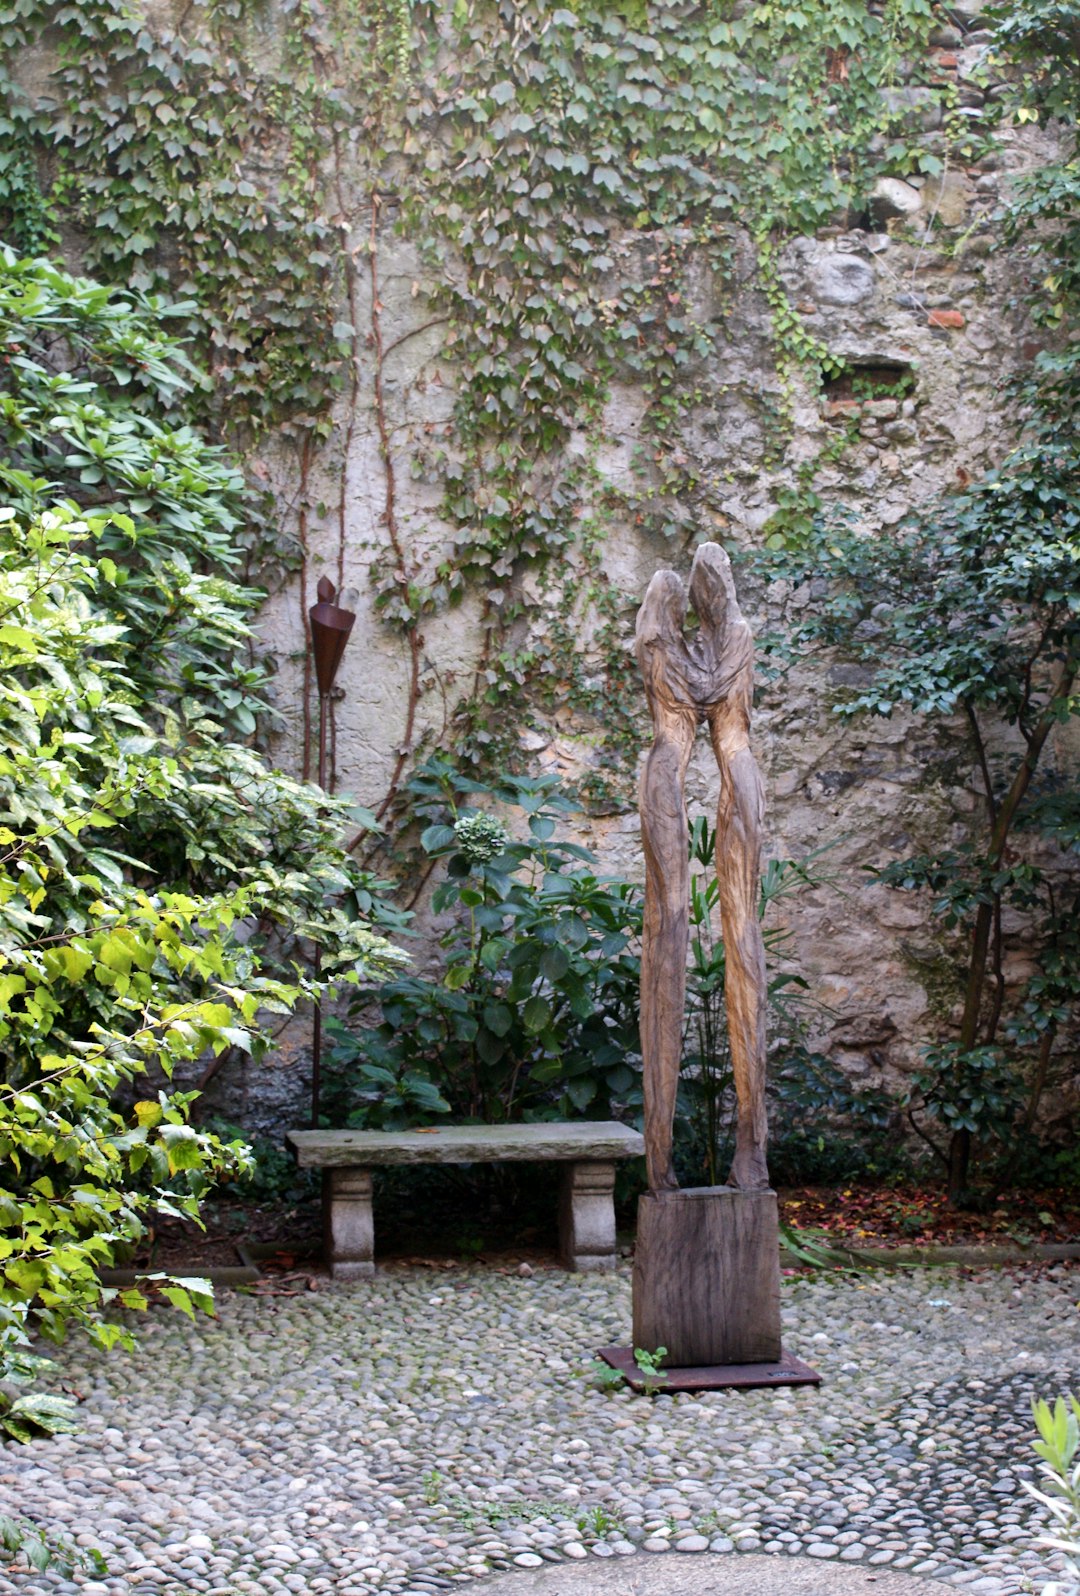 statue near bench beside garden